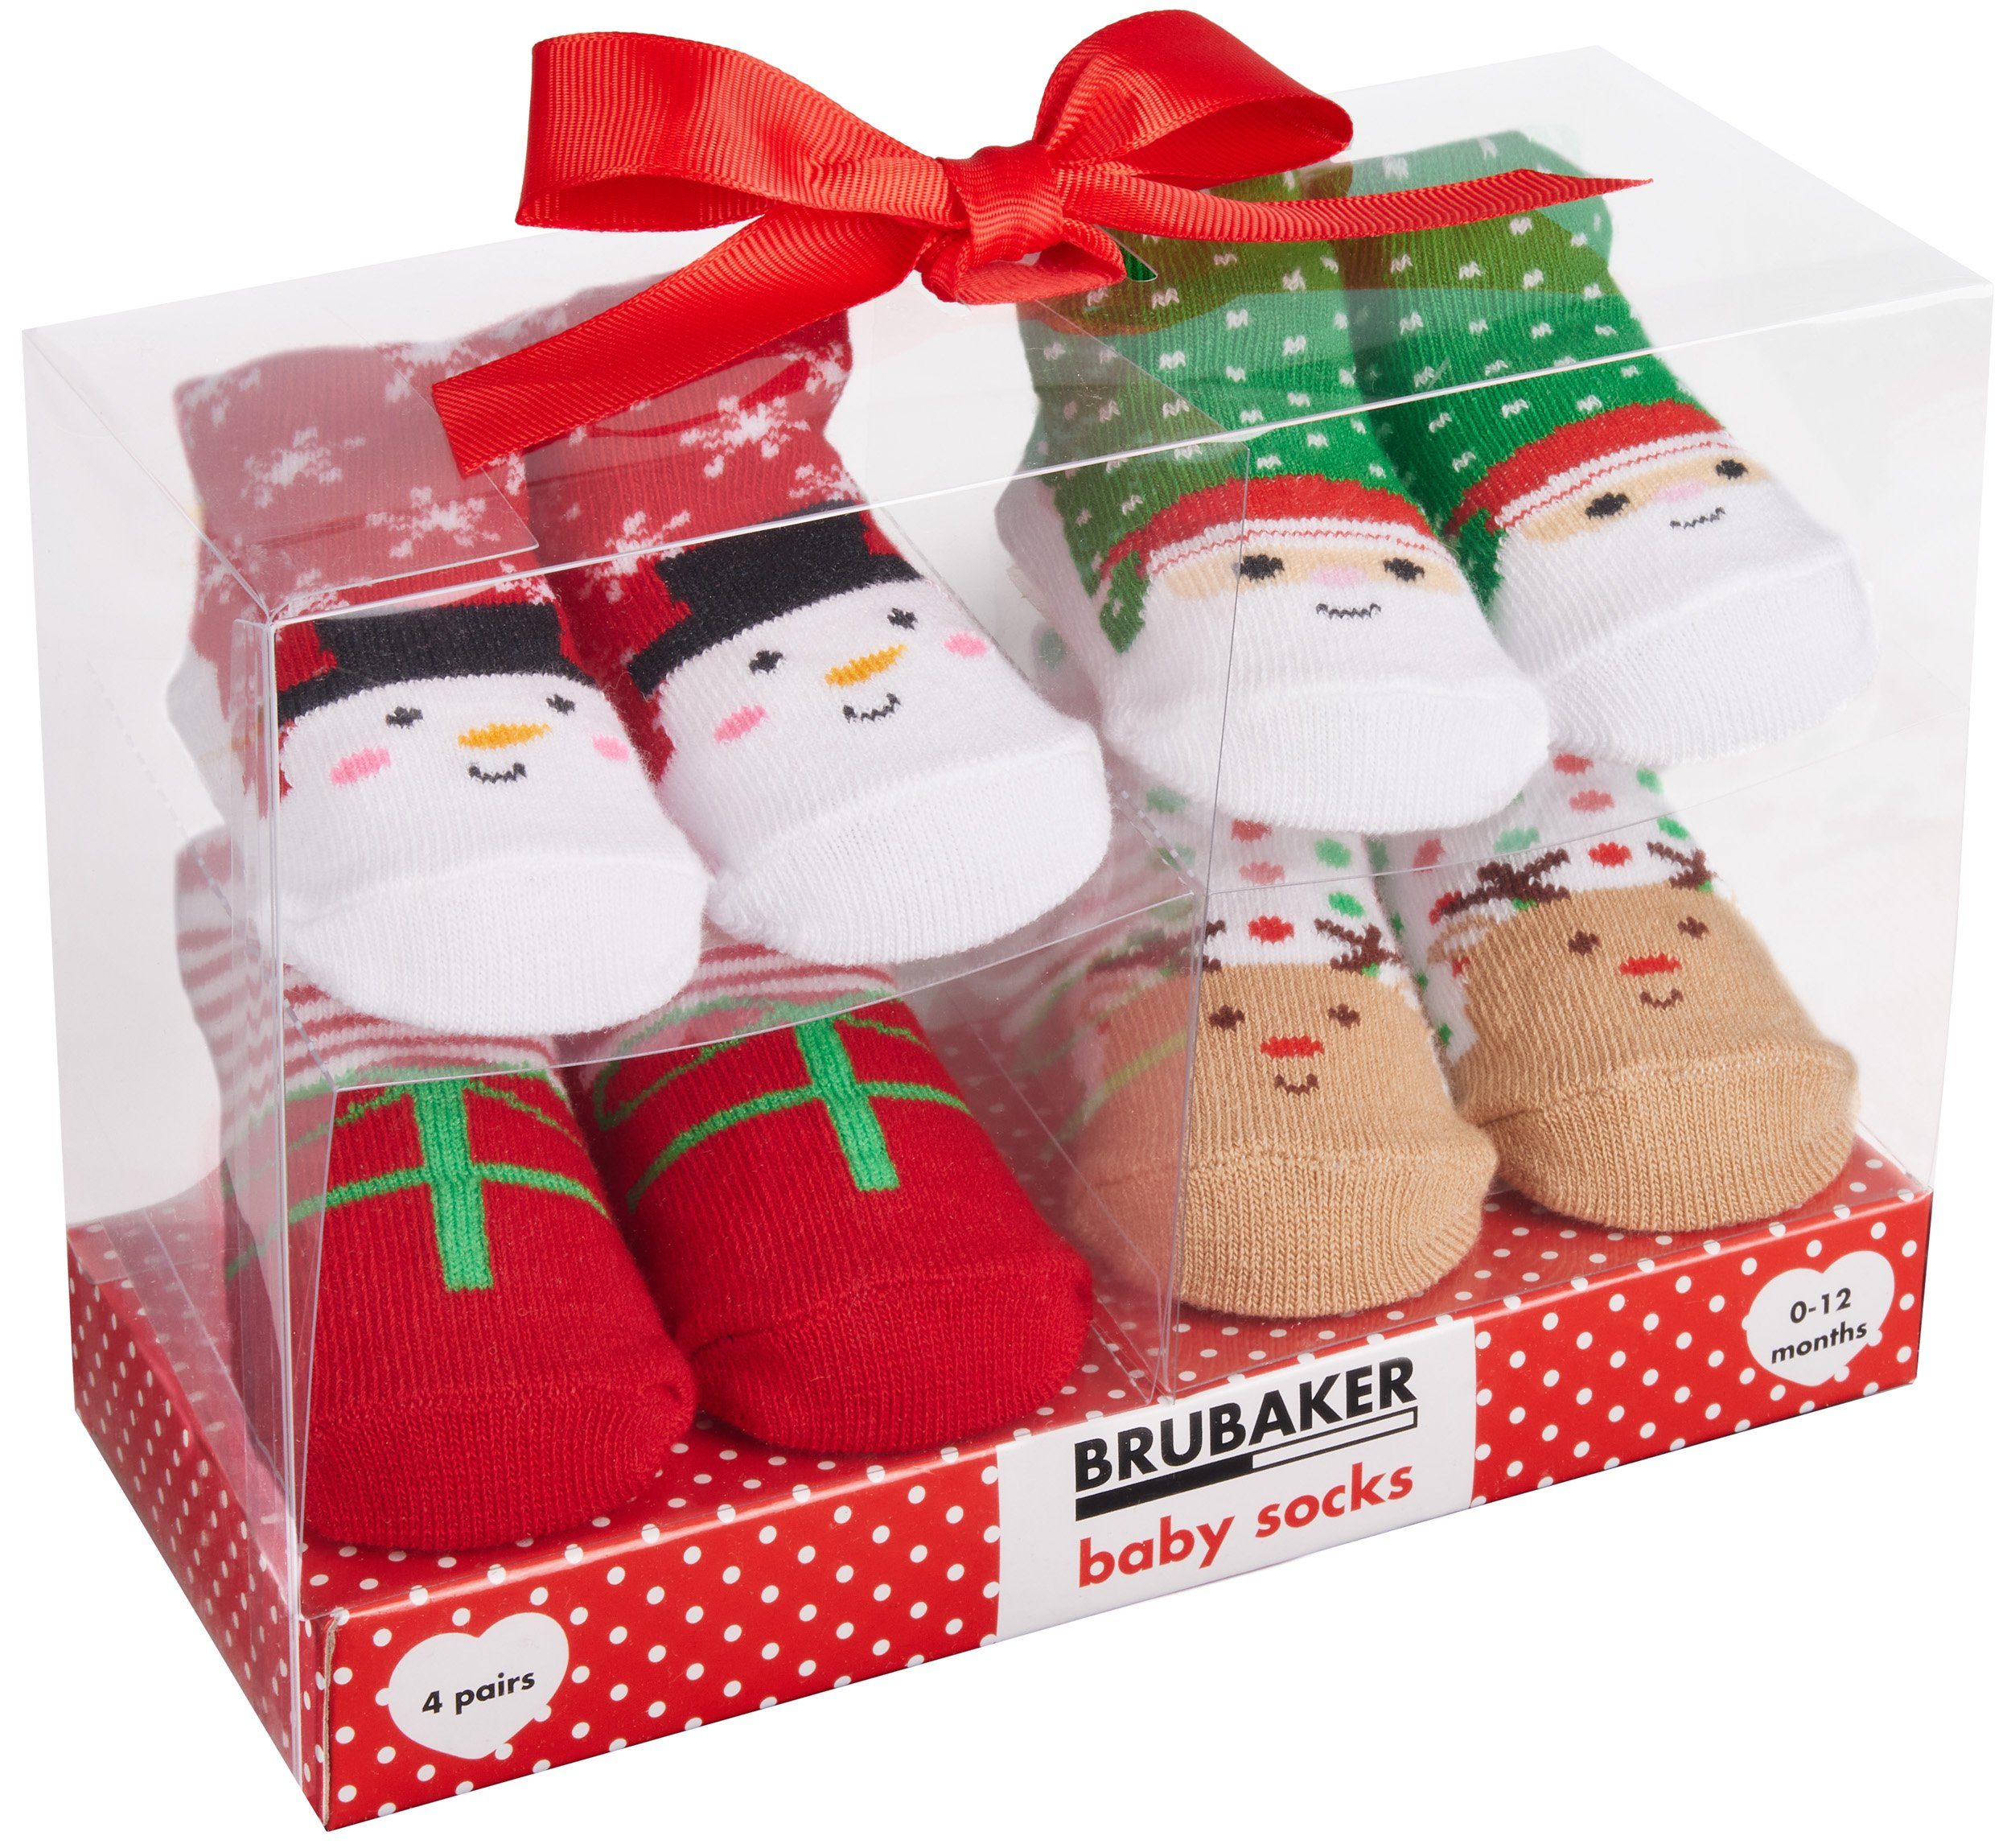 BRUBAKER Socken Babysocken für Jungen und Mädchen 0-12 Monate (4-Paar, Baumwollsocken mit Schneemann-Motiven) Baby Geschenkset für Neugeborene in Geschenkverpackung mit Schleife